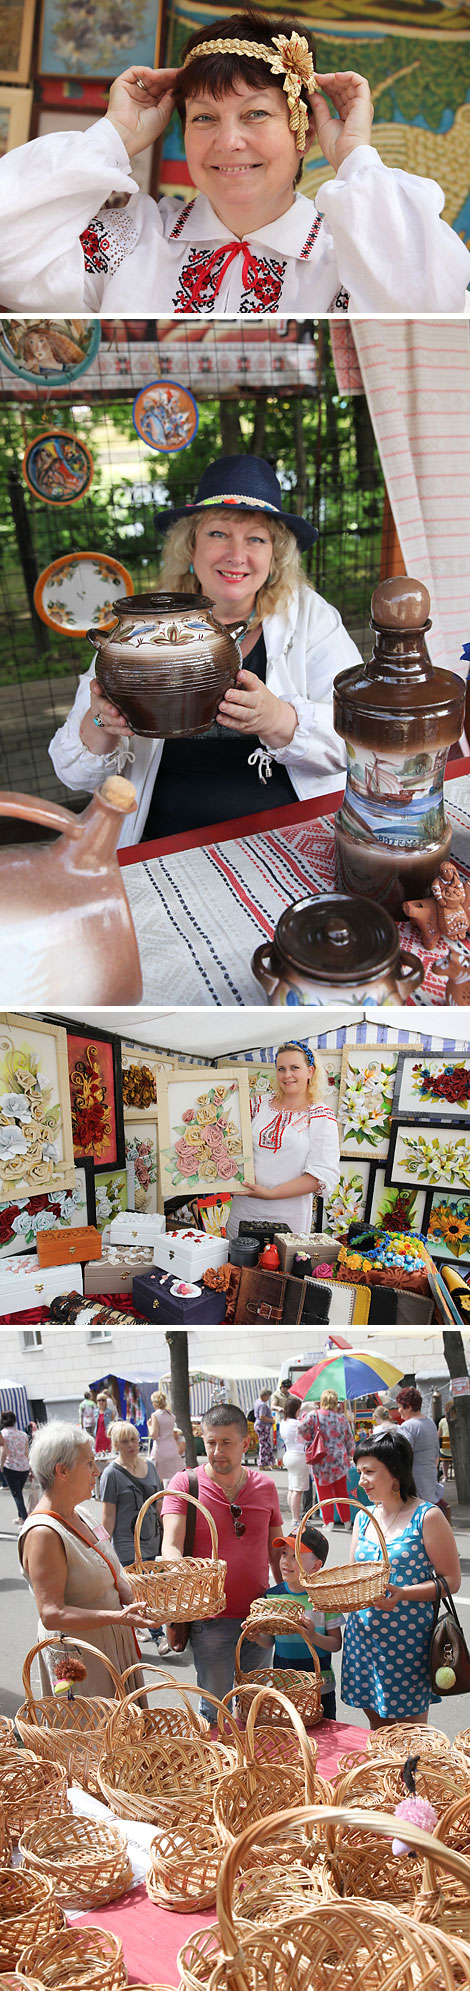 Zadzvinski Kirmash fair at Slavianski Bazaar in Vitebsk